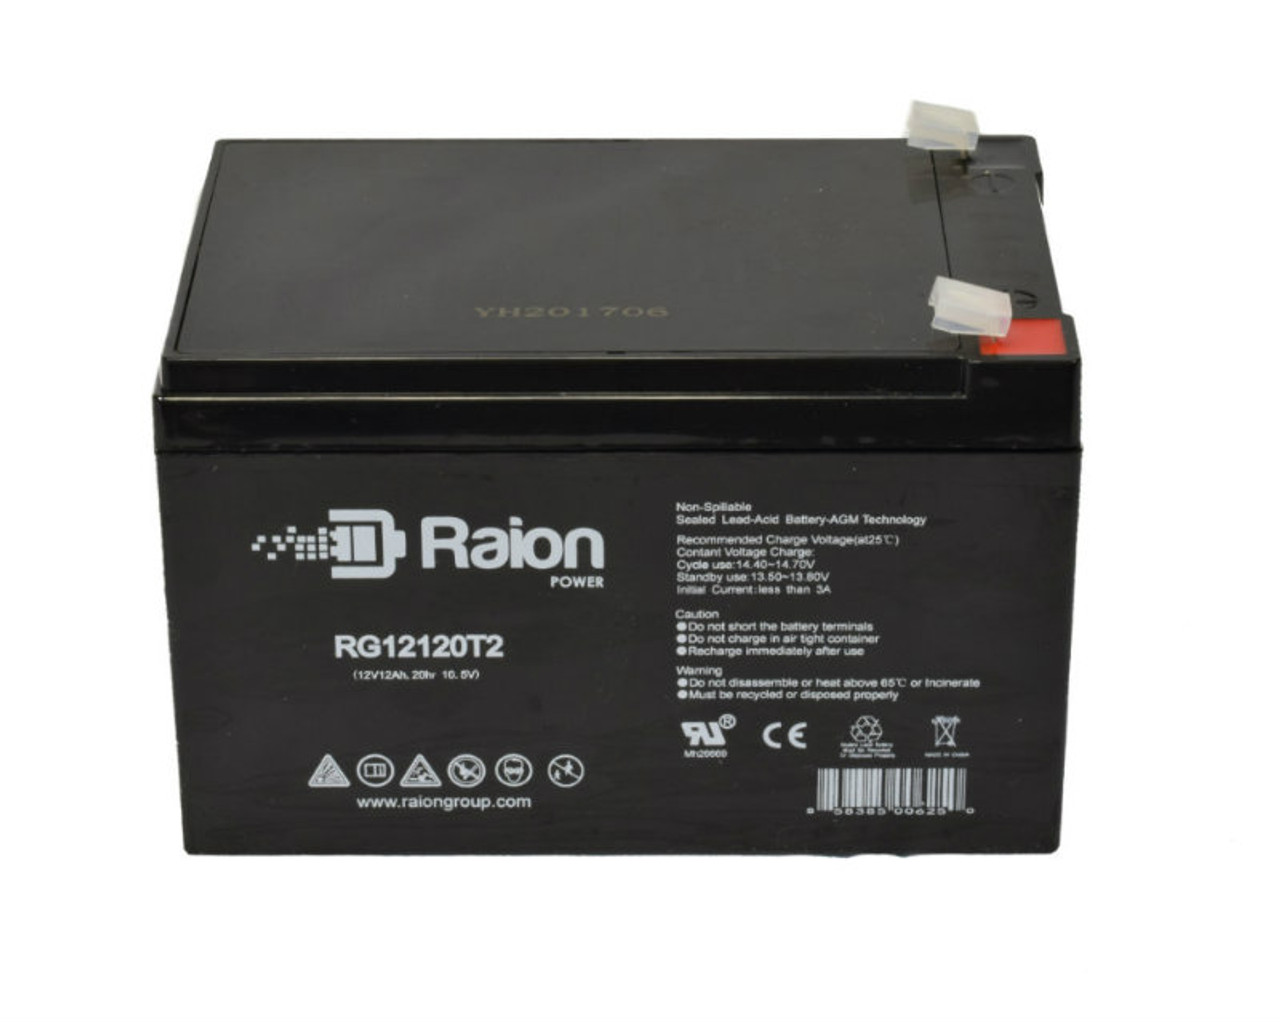 Raion Power RG12120T2 SLA Battery for FengSheng FS12-14